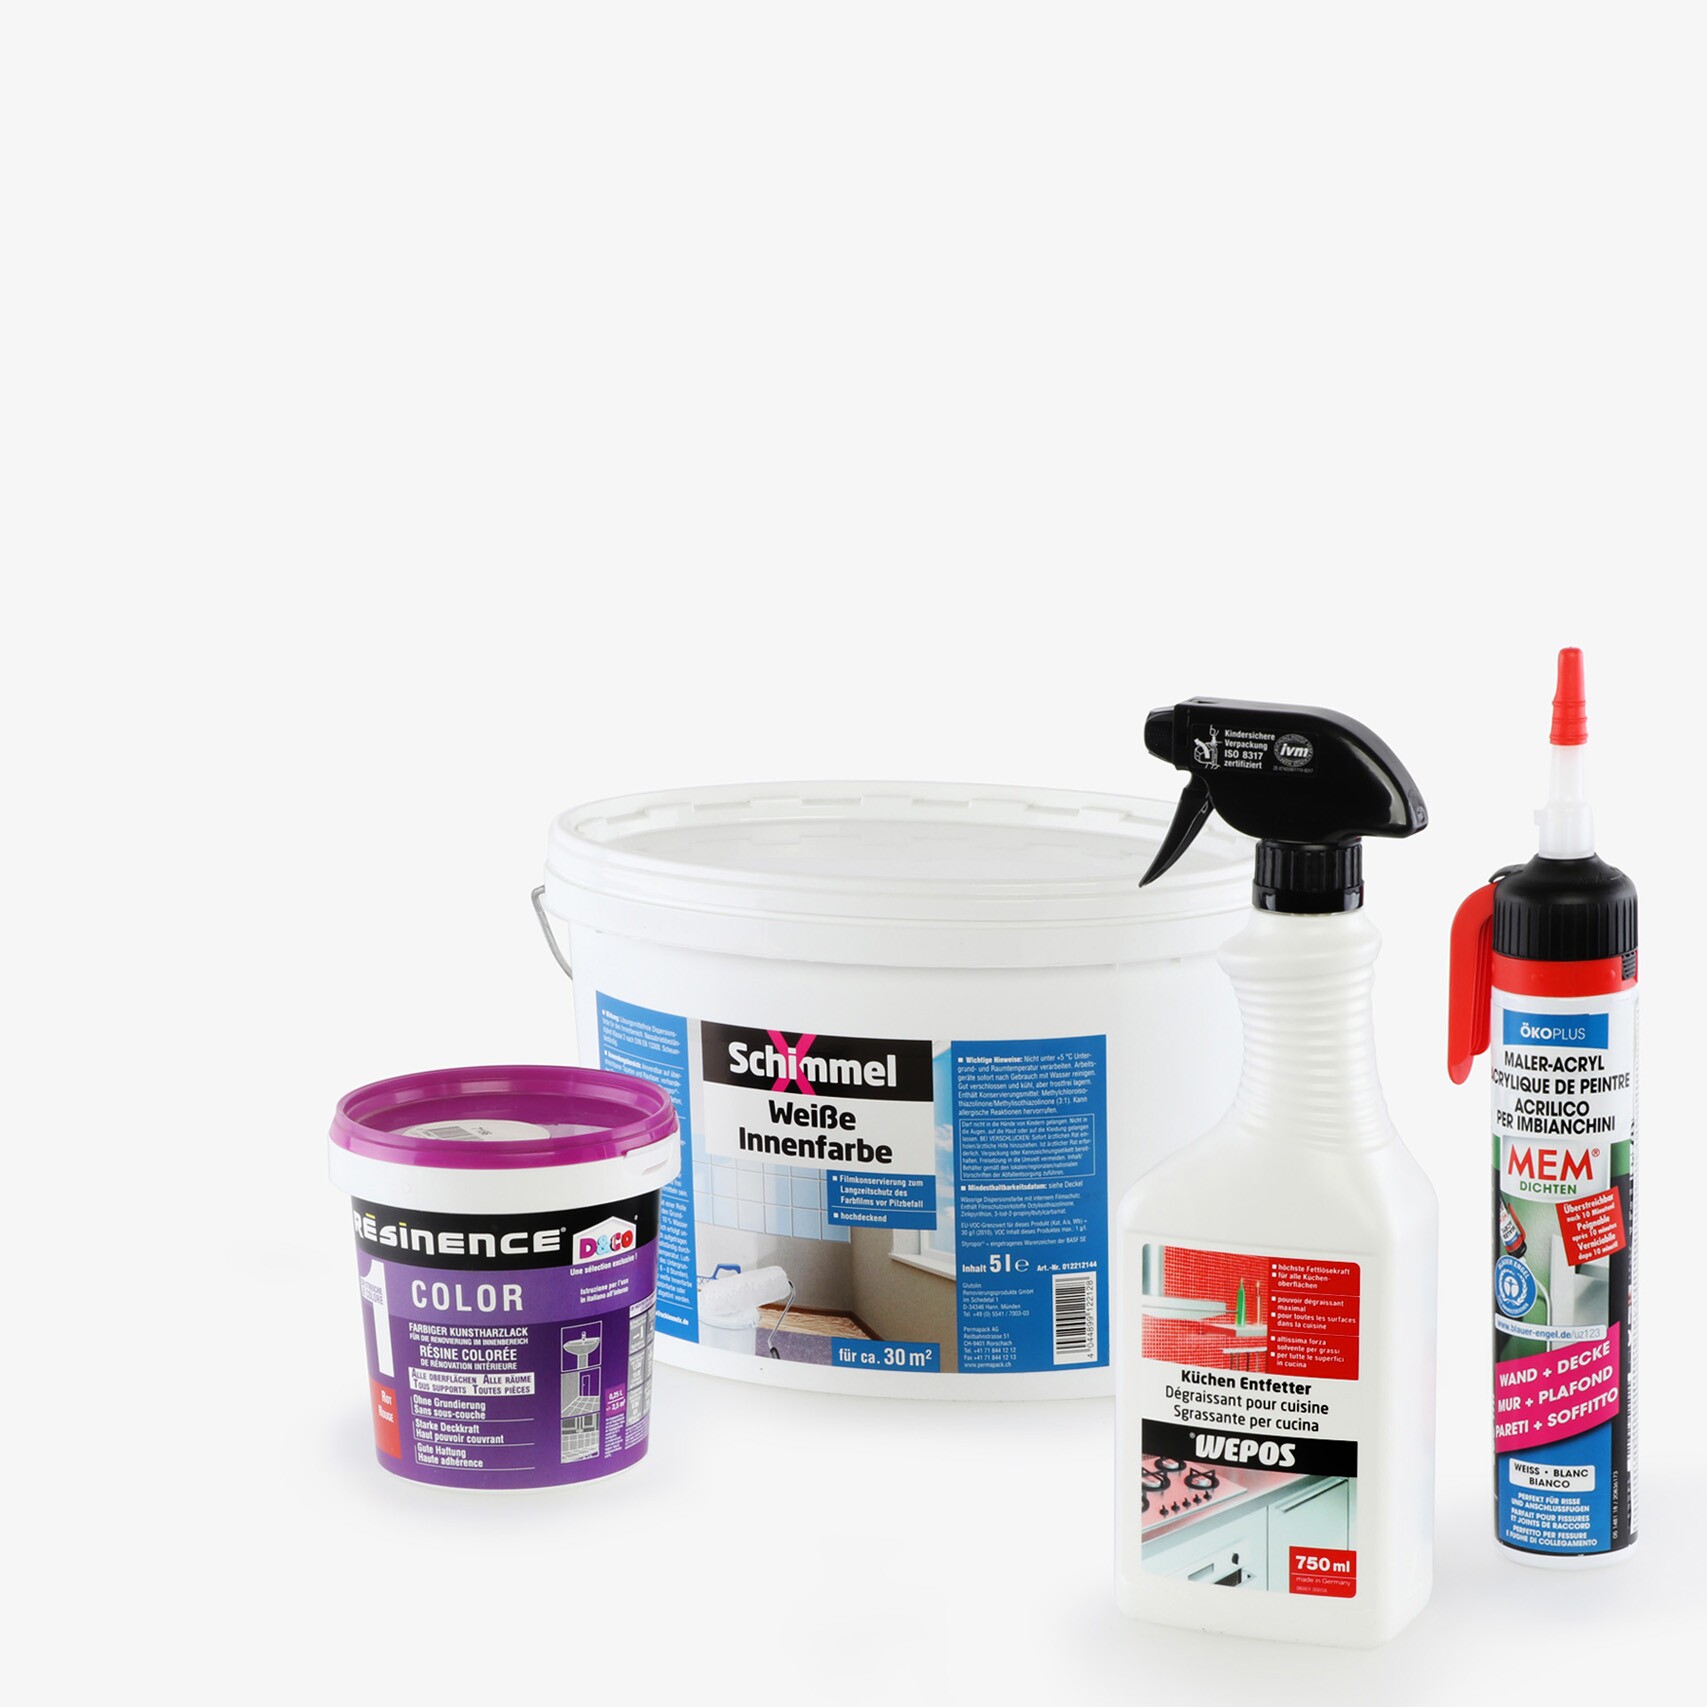 Produits pour le secteur do-it yourself - produits de nettoyage, produits anti-moisissures, chimie du bâtiment, peintures